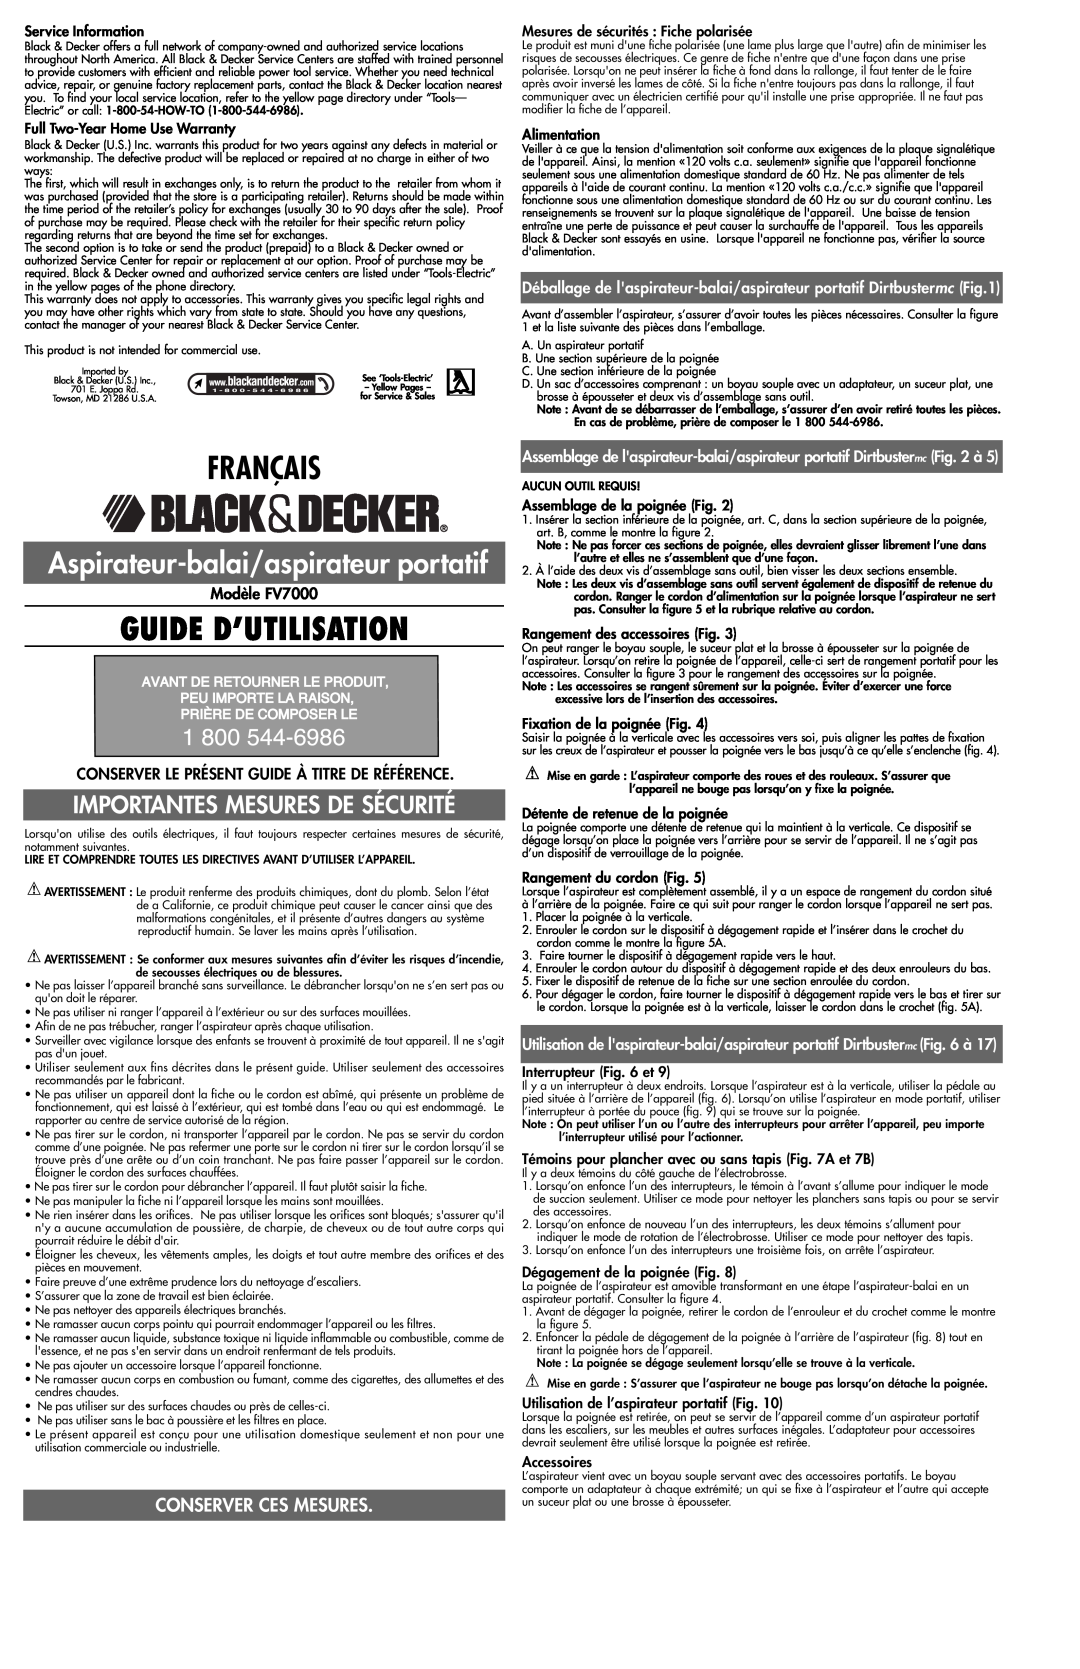 Black & Decker 243935-00 Français, Guide D’Utilisation, Aspirateur-balai/aspirateur portatif, Conserver Ces Mesures 